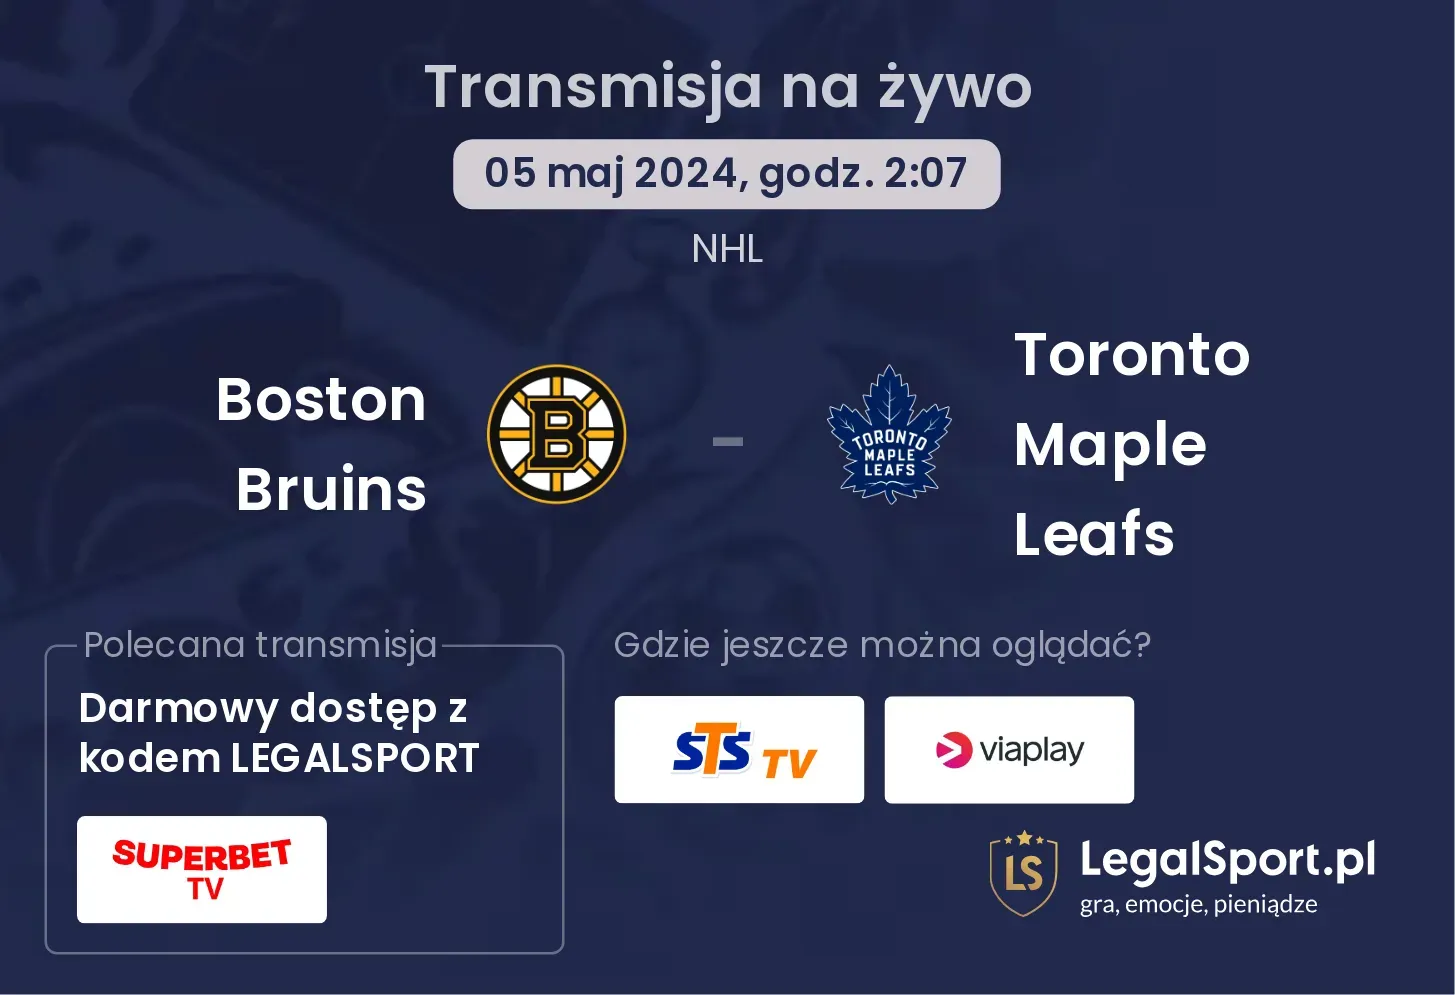 Boston Bruins - Toronto Maple Leafs transmisja na żywo